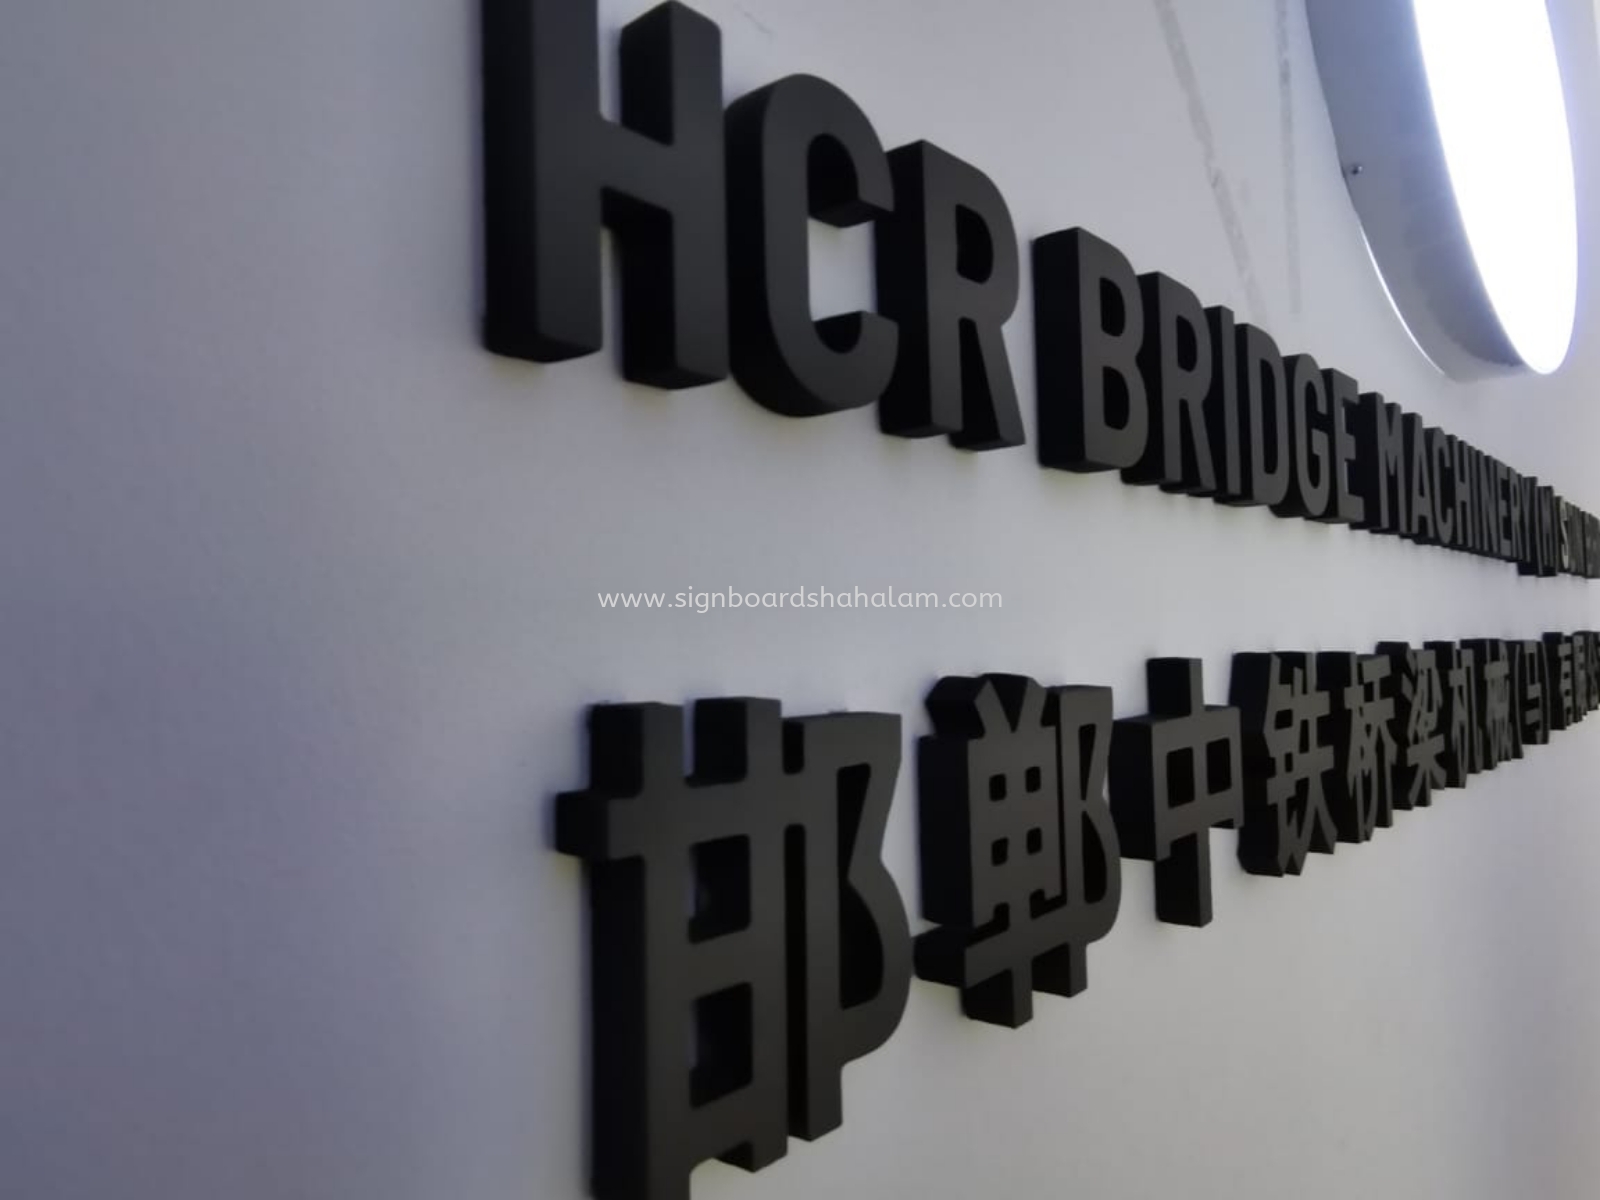 HCR Bridge PJ - 3D Box Up Lettering or logo 